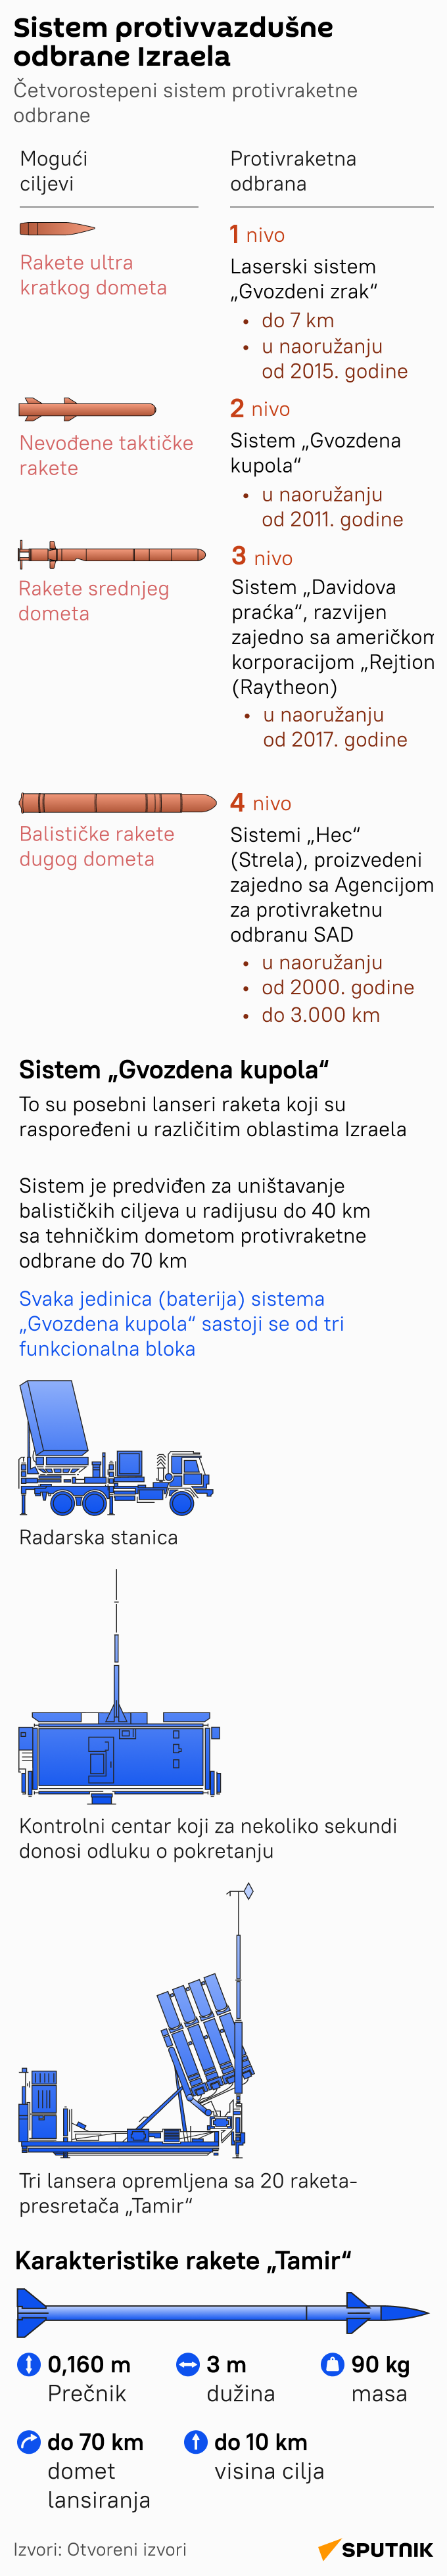 Infografika Sistem protivvazdušne odbrane Izraela Gvozdena kupola LATINICA mob - Sputnik Srbija